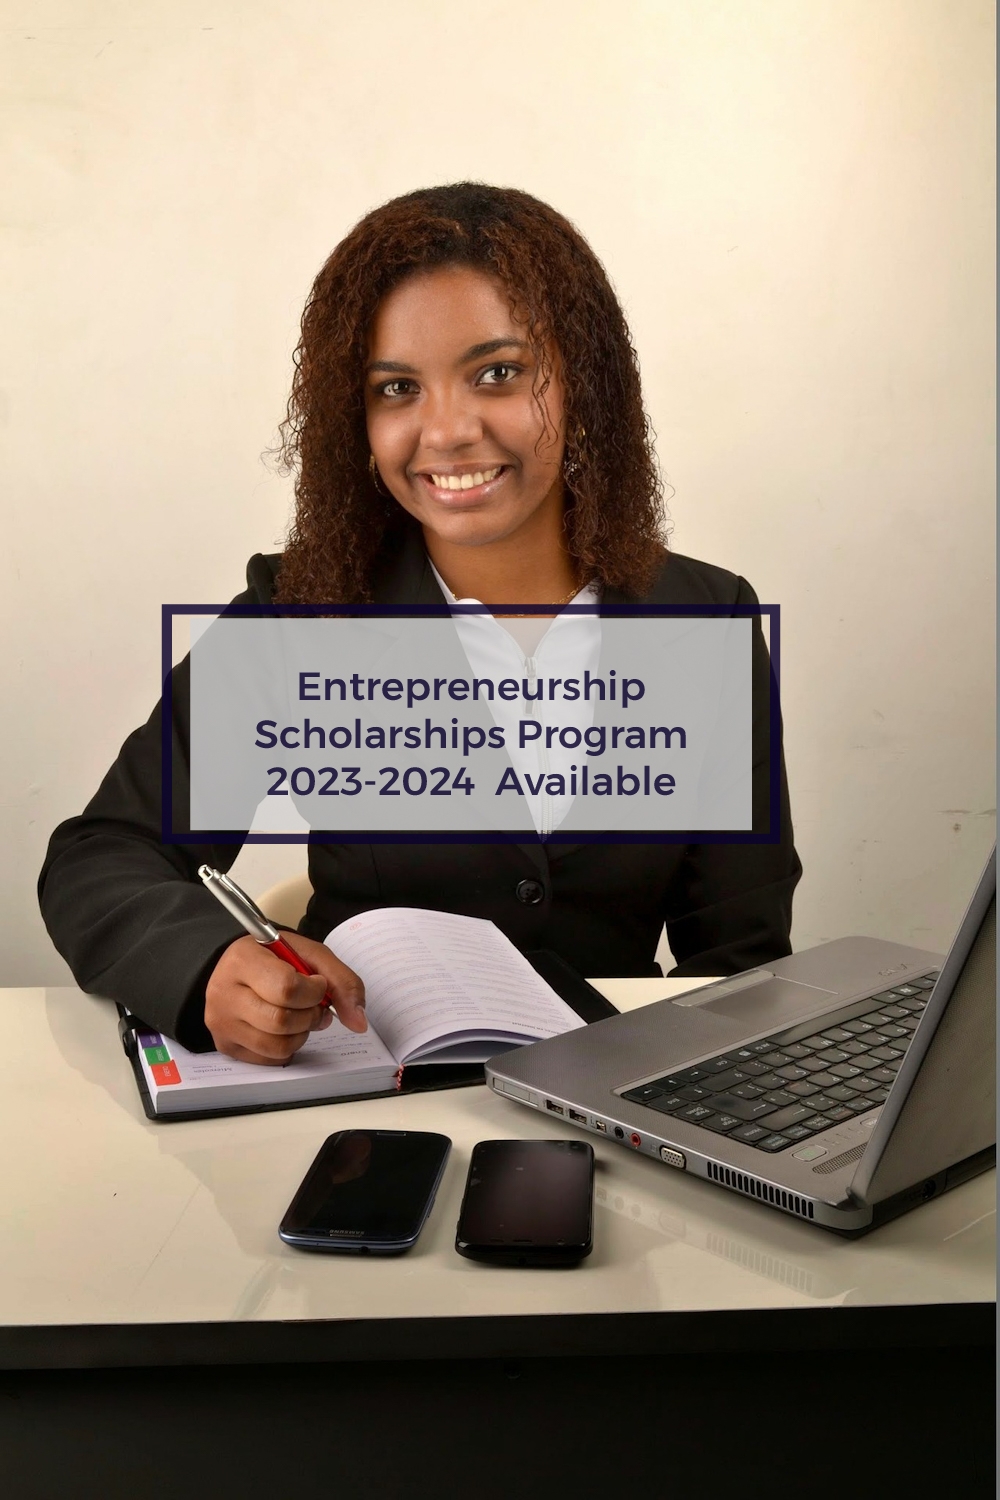 Entrepreneurship Scholarships Program 2023-2024 for entrepreneurs